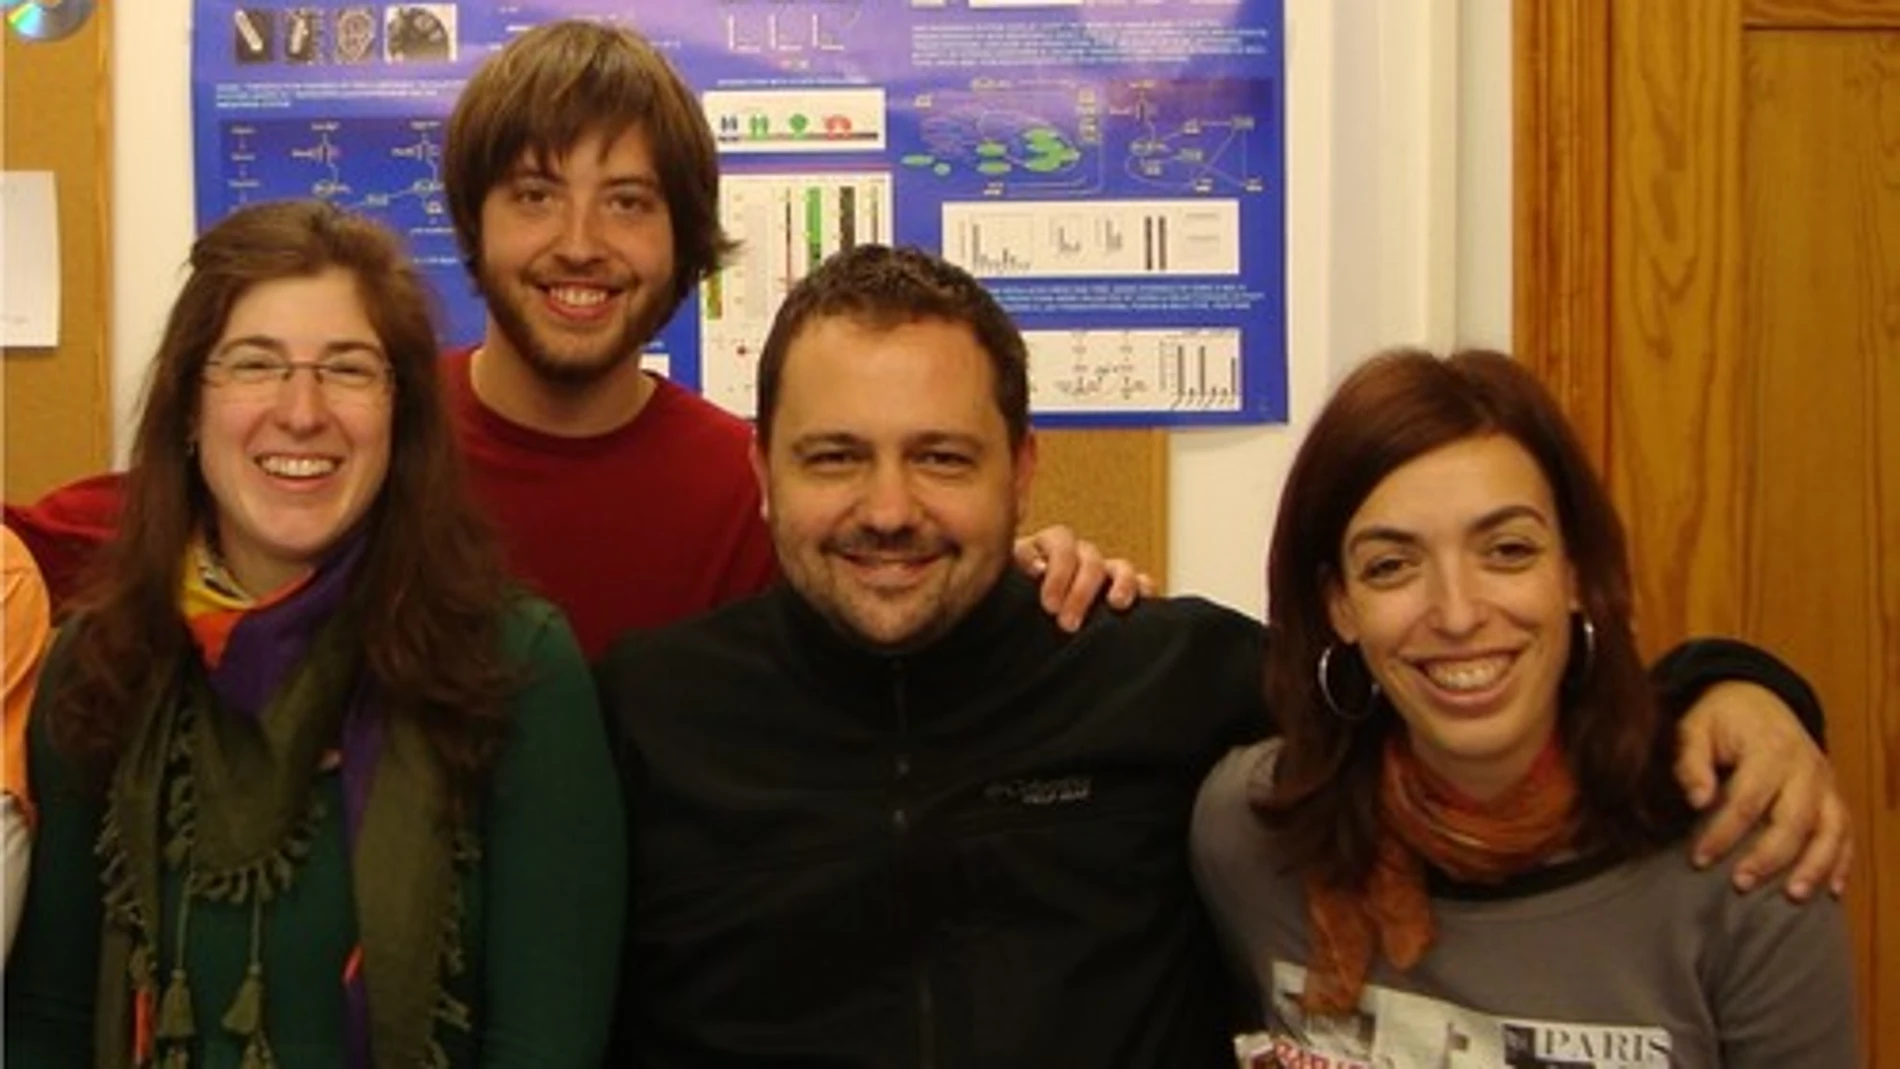 De izquierda a derecha, Rocío Romero Zaliz, Javier Arnedo, Igor Zwir y Coral del Val, investigadores de la Universidad de Granada